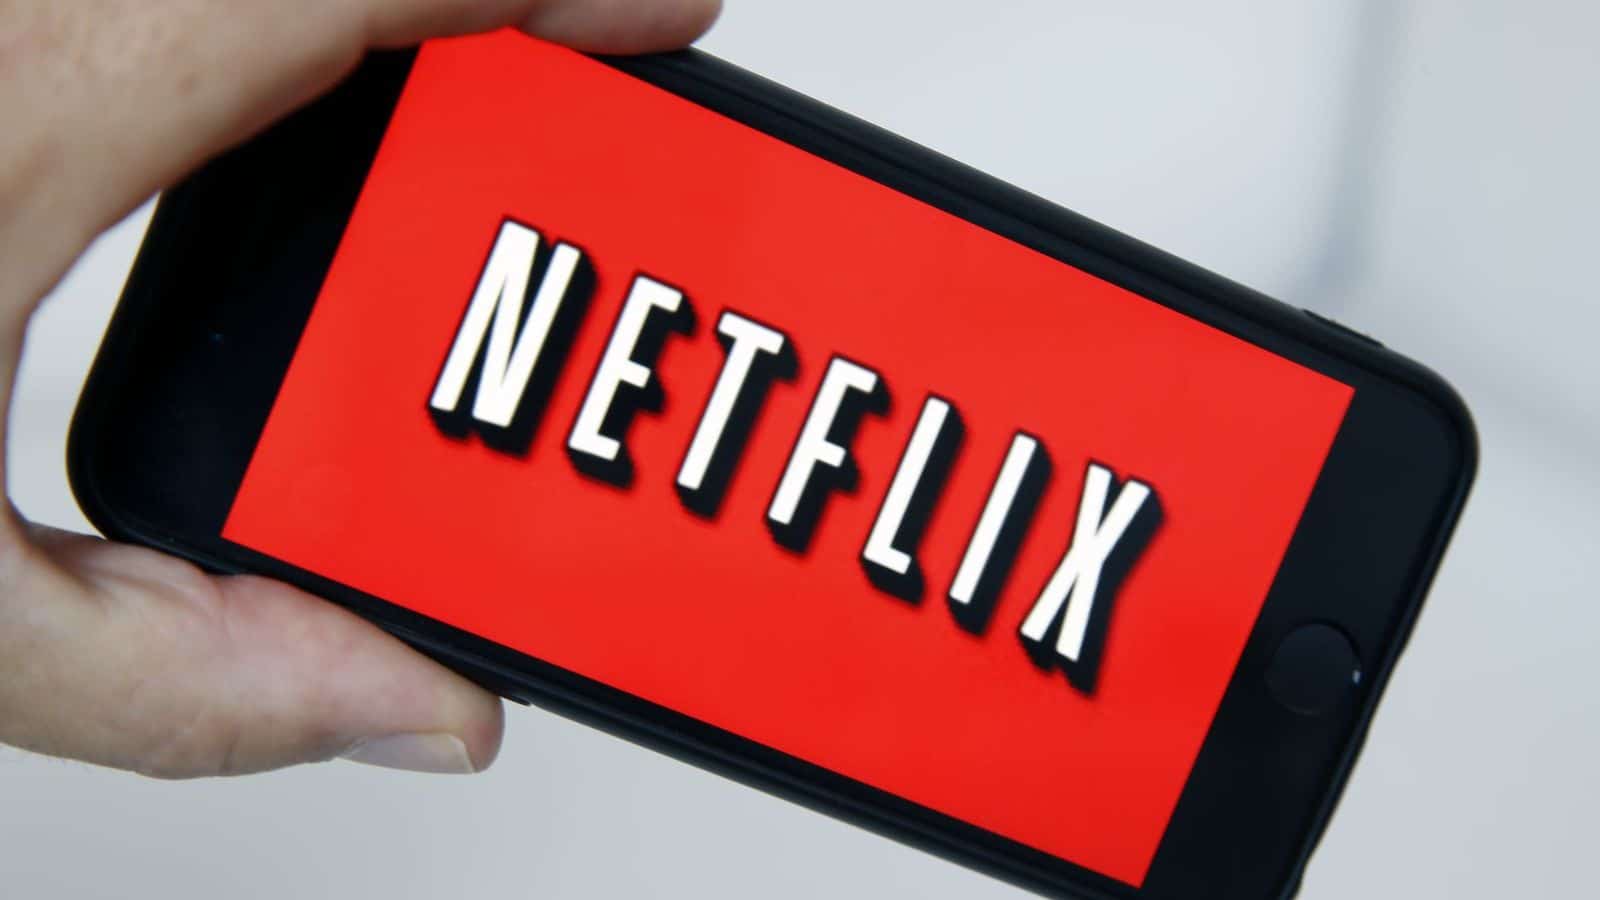  दुःखद अंत: Netflix ने प्रिय सेवा बंद करण्याची घोषणा केली!